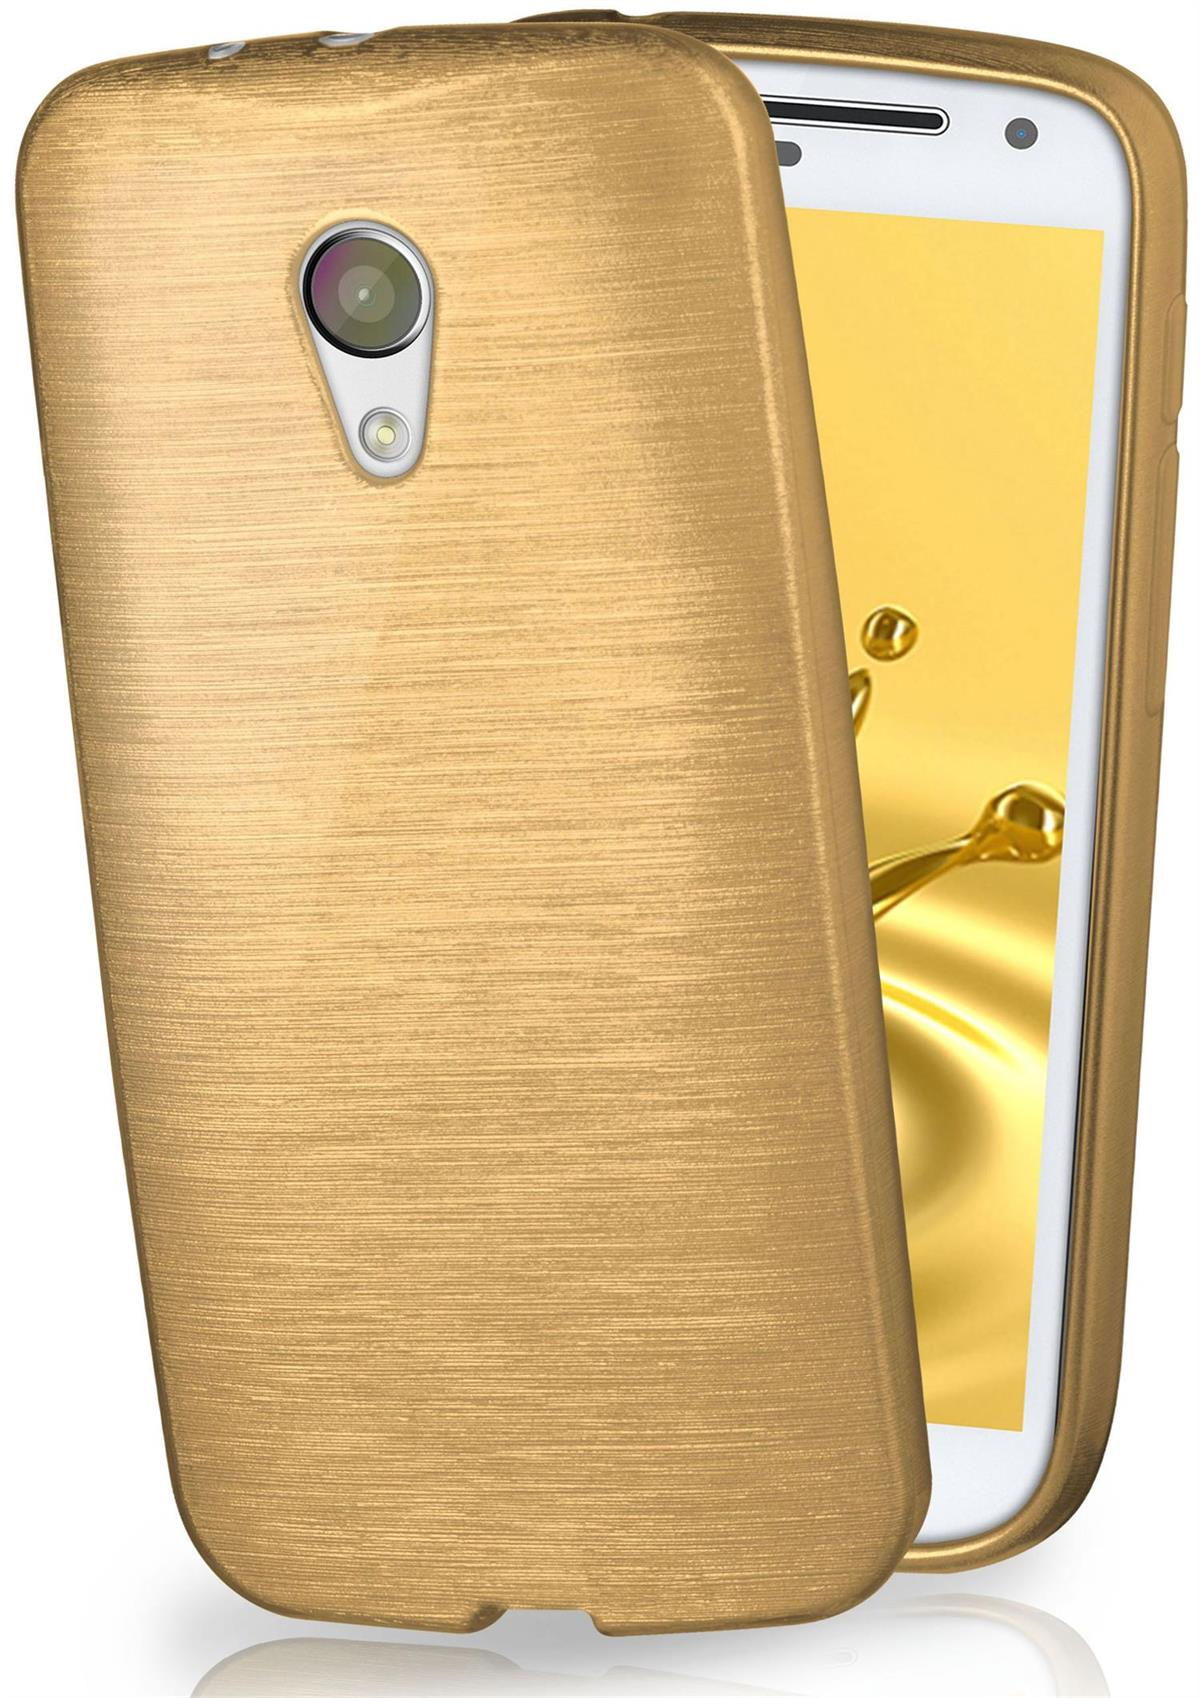 Moto Motorola, G2, Ivory-Gold Case, MOEX Brushed Backcover,